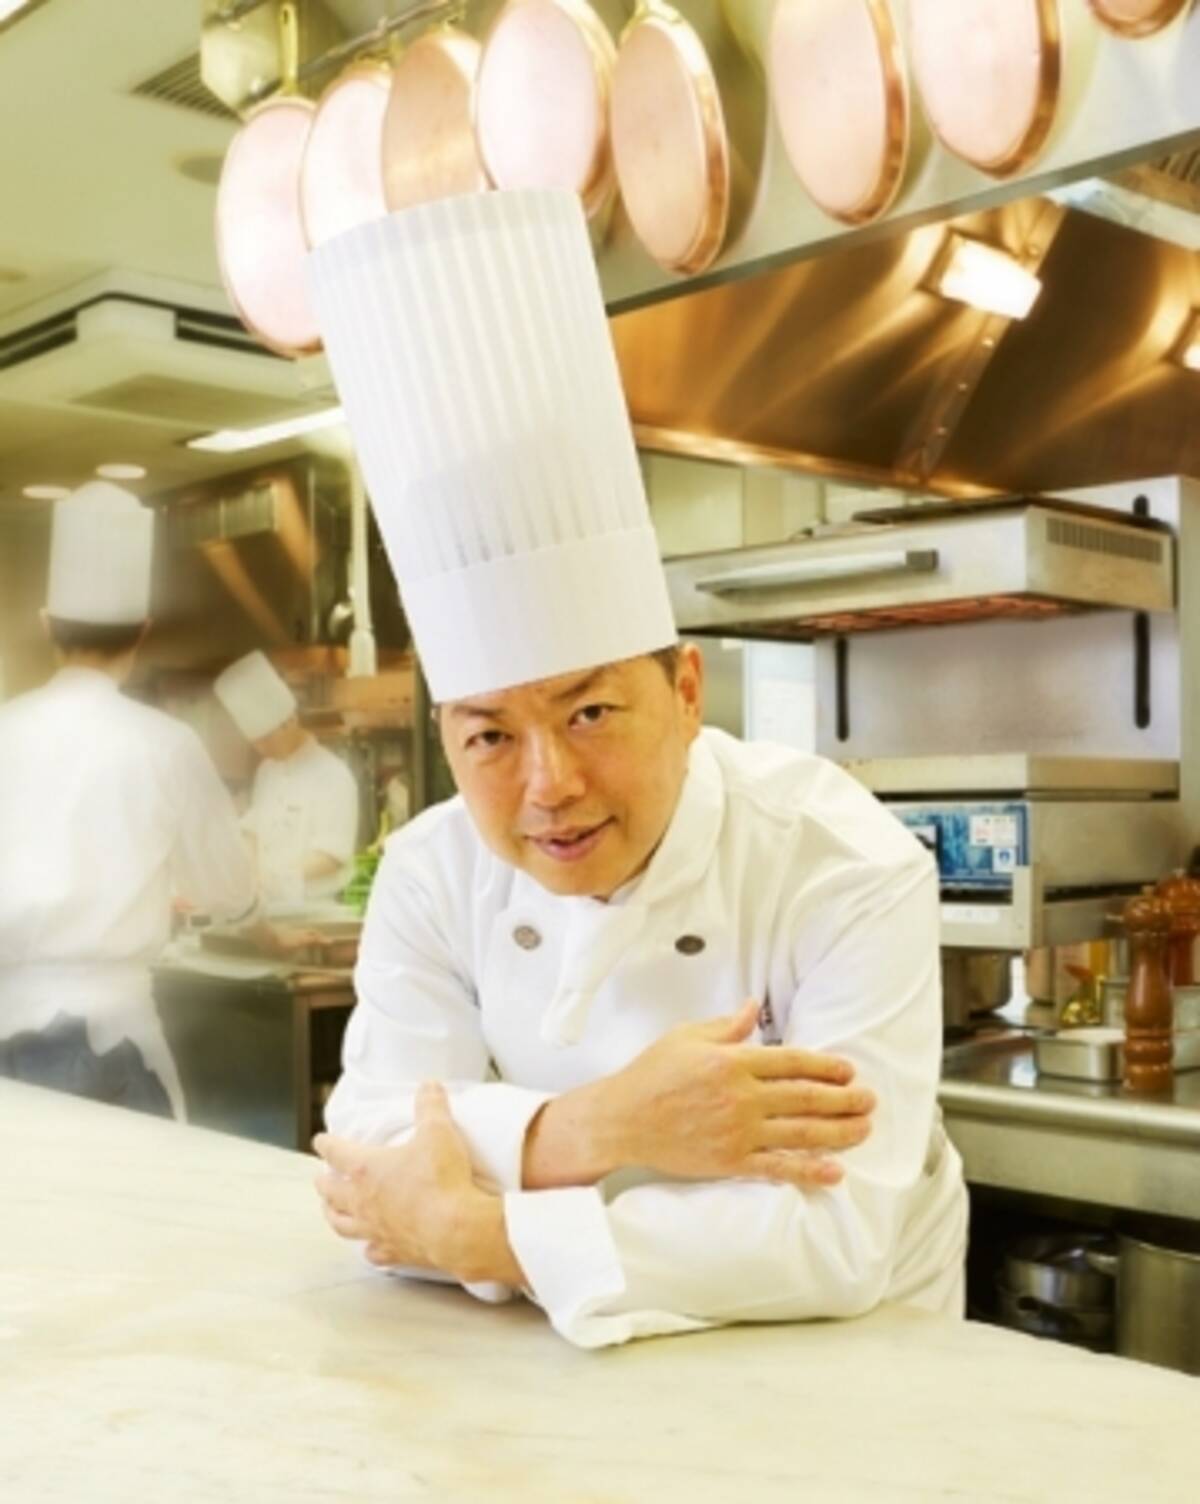 12年世界料理オリンピック 日本代表キャプテンを務めた総料理長 三浦健史の料理フェア開催 16年7月29日 エキサイトニュース